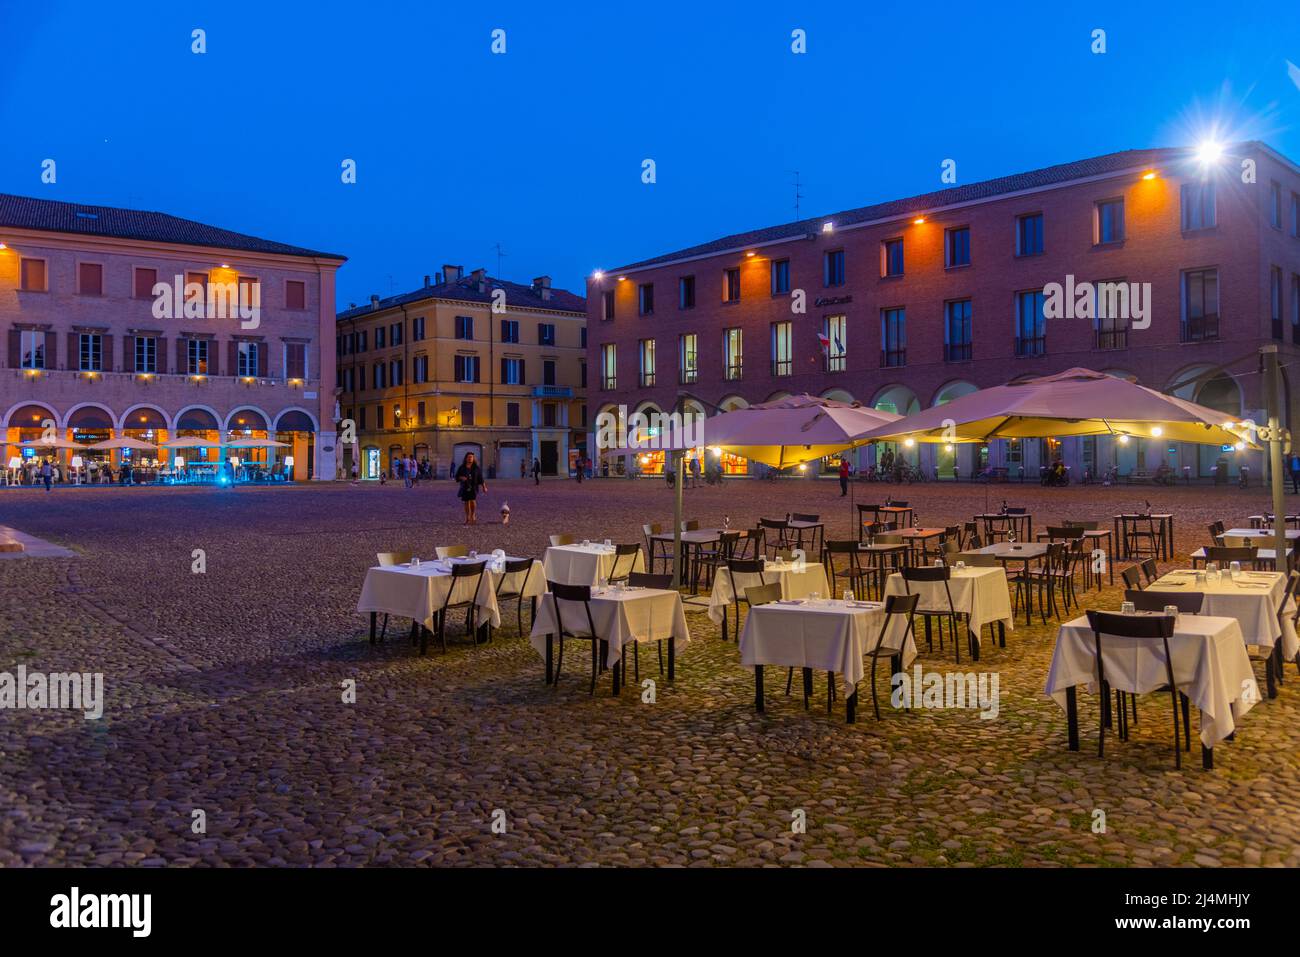 Modena, Italien, 22. September 2021: Blick auf die Piazza Grande in der italienischen Stadt Modena bei Sonnenuntergang. Stockfoto